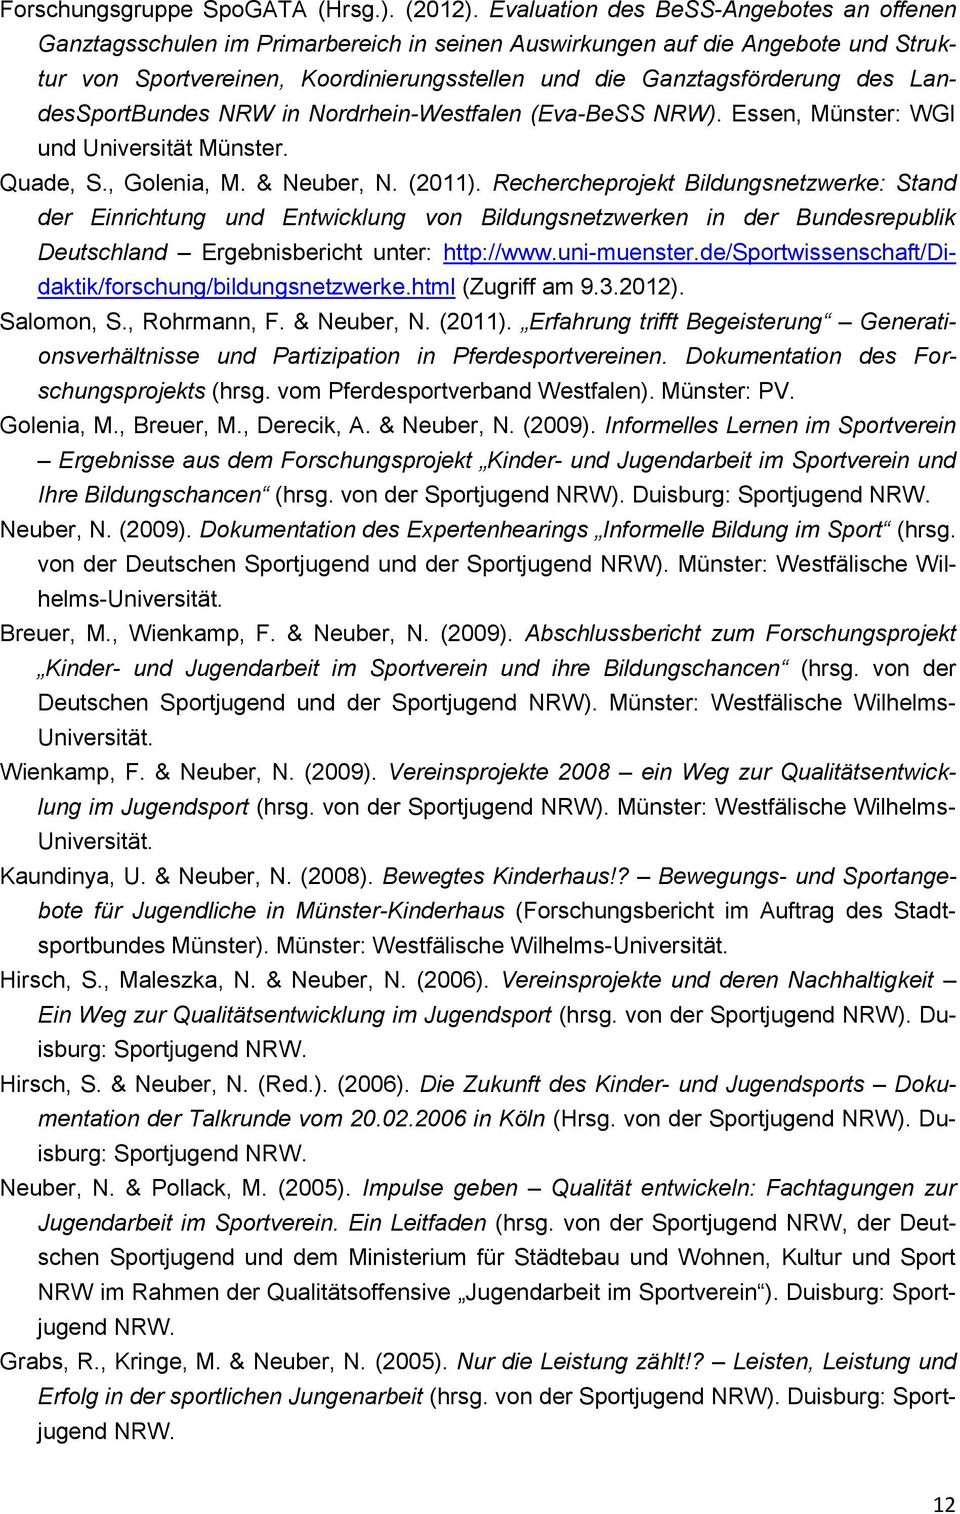 LandesSportBundes NRW in Nordrhein-Westfalen (Eva-BeSS NRW). Essen, Münster: WGI und Universität Münster. Quade, S., Golenia, M. & Neuber, N. (2011).